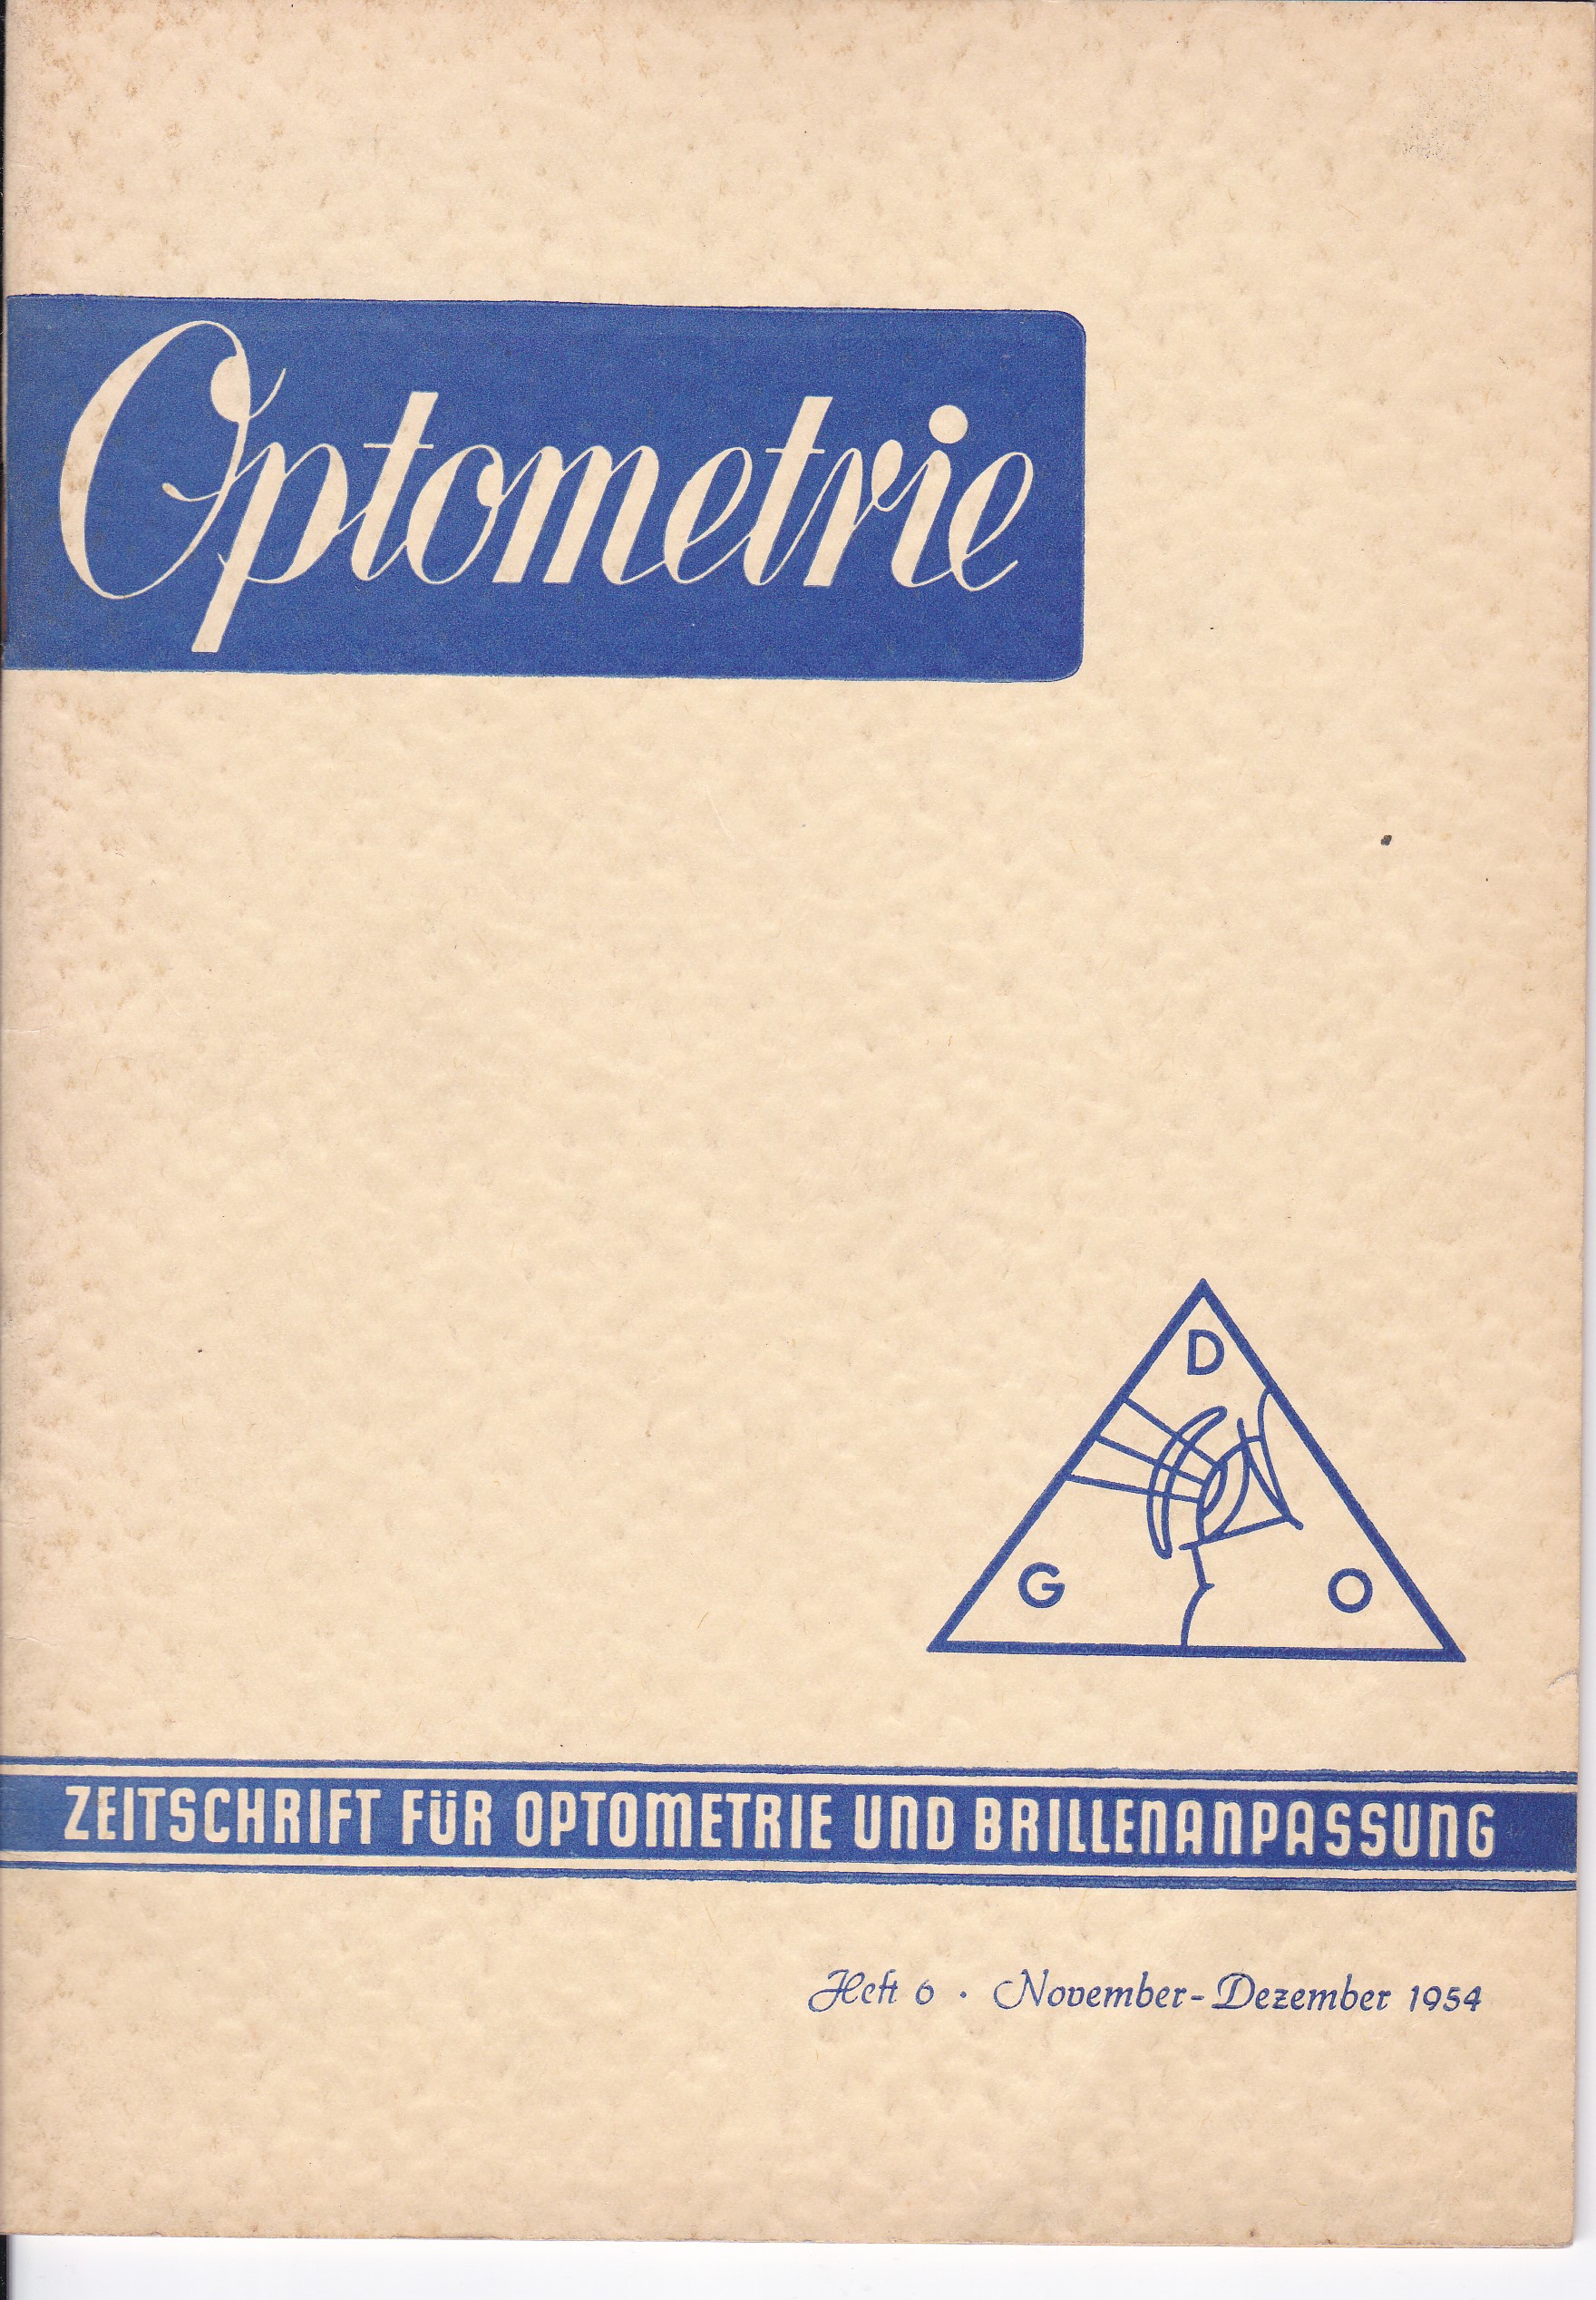 OPTOMETRIE. Zeitschrift für Optometrie und Brillenanpassung.